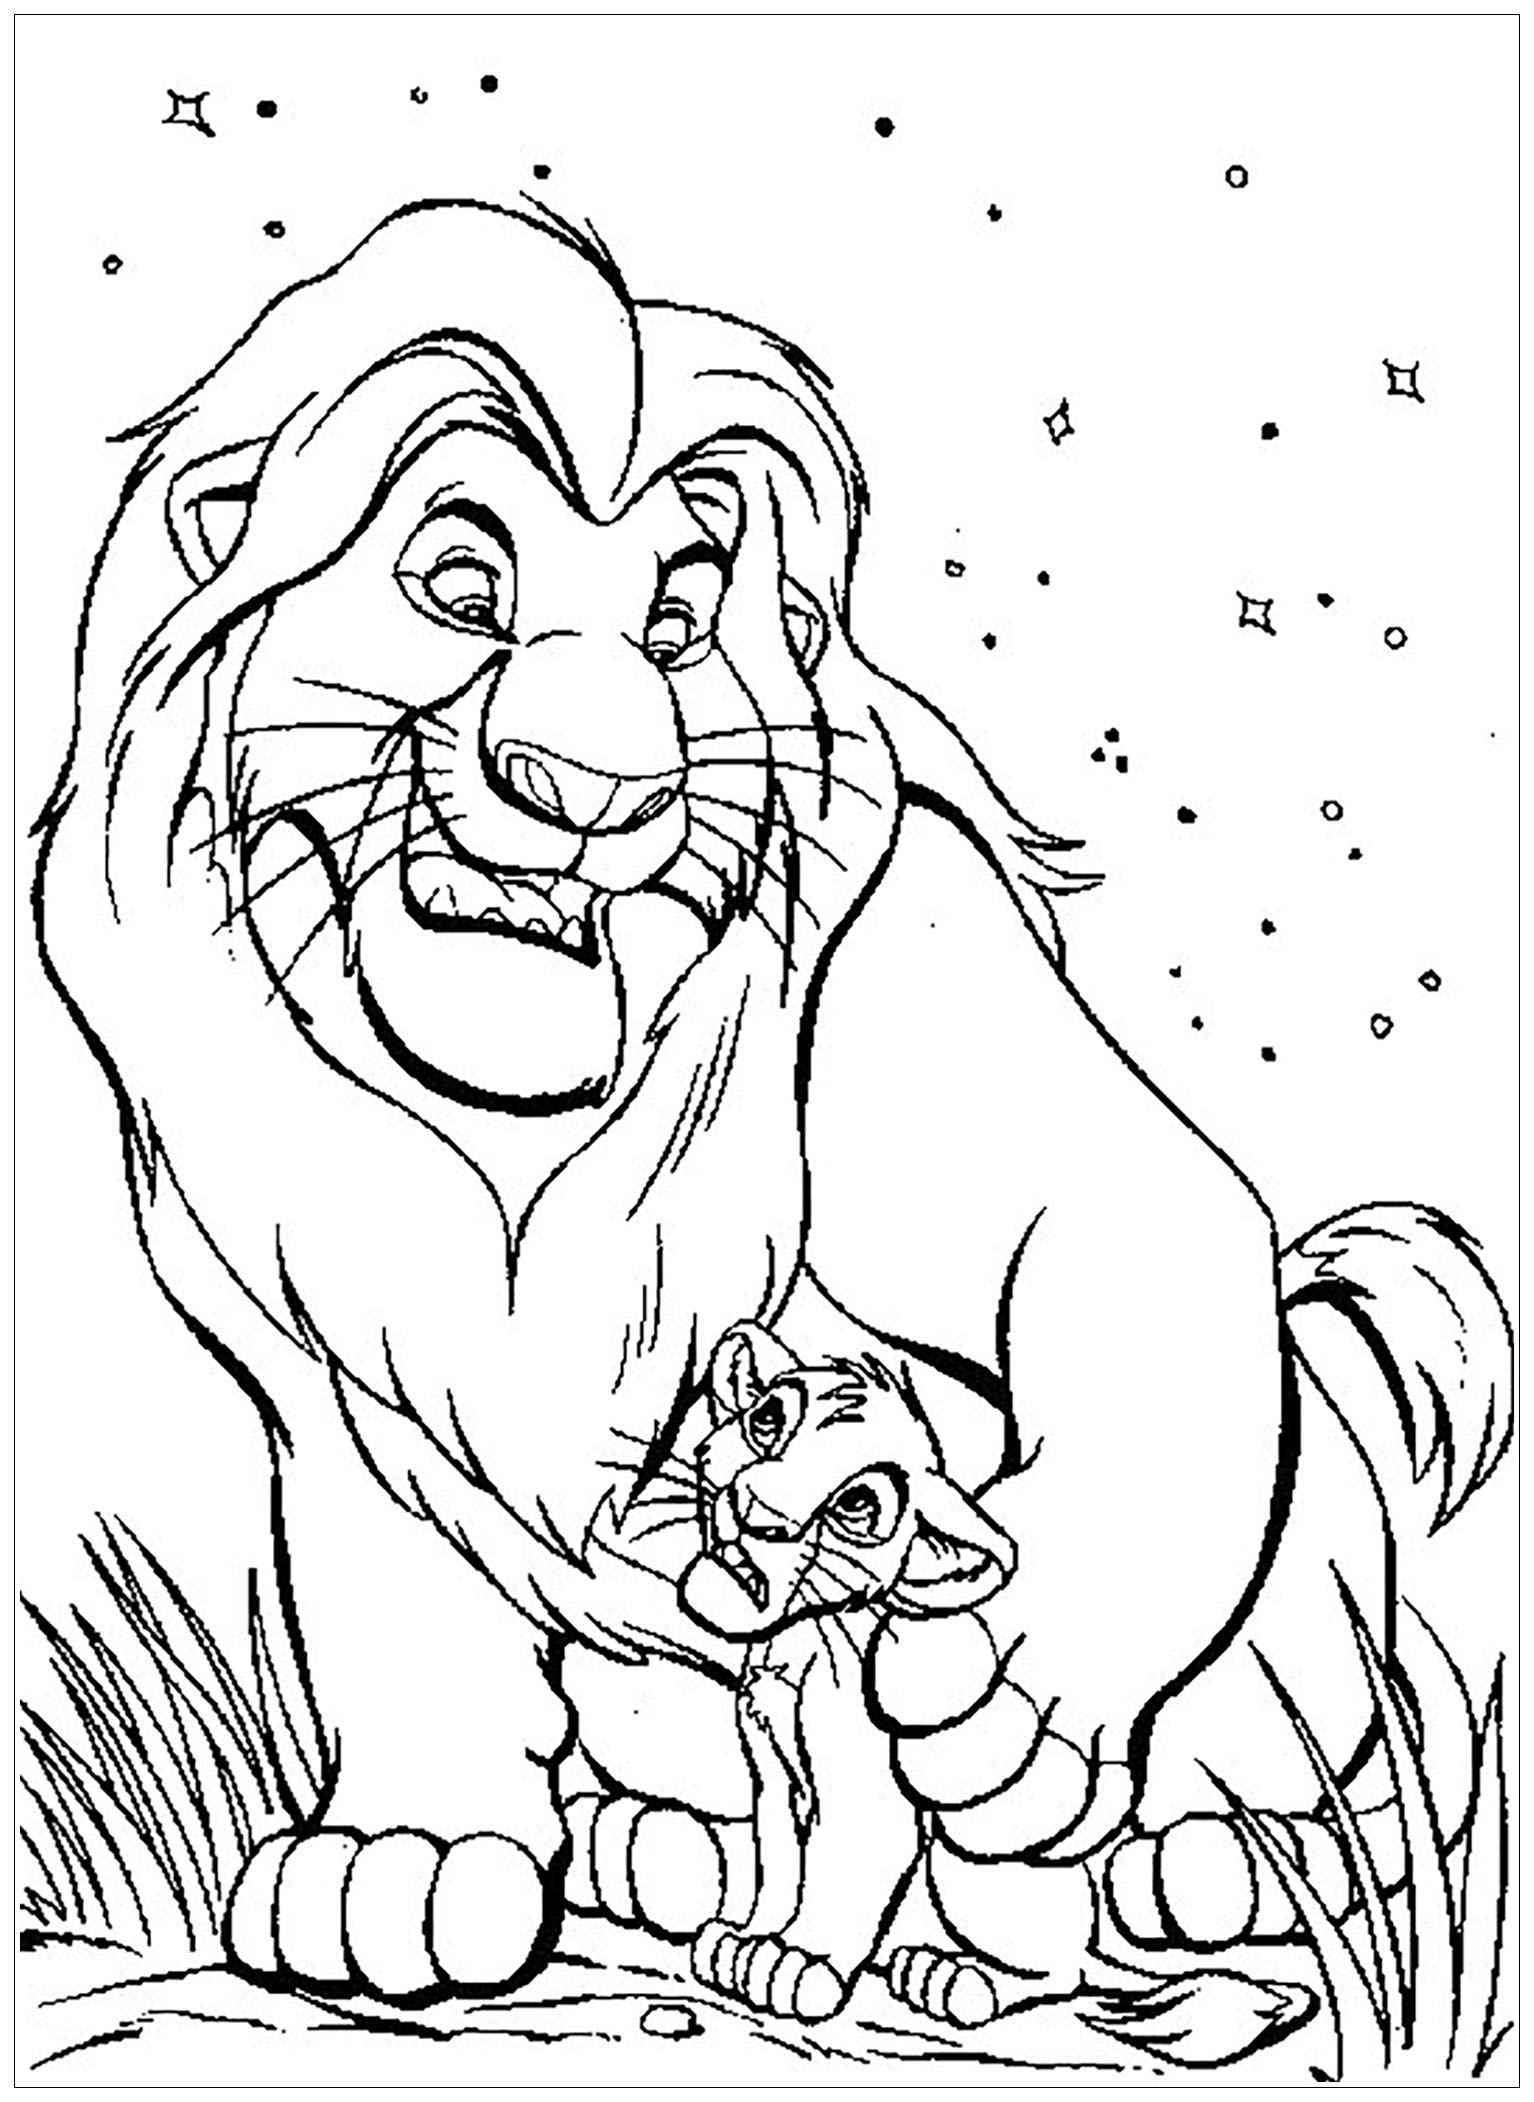 Mufasa Et Simba - Coloriage Le Roi Lion - Coloriages Pour à Coloriage Lion,